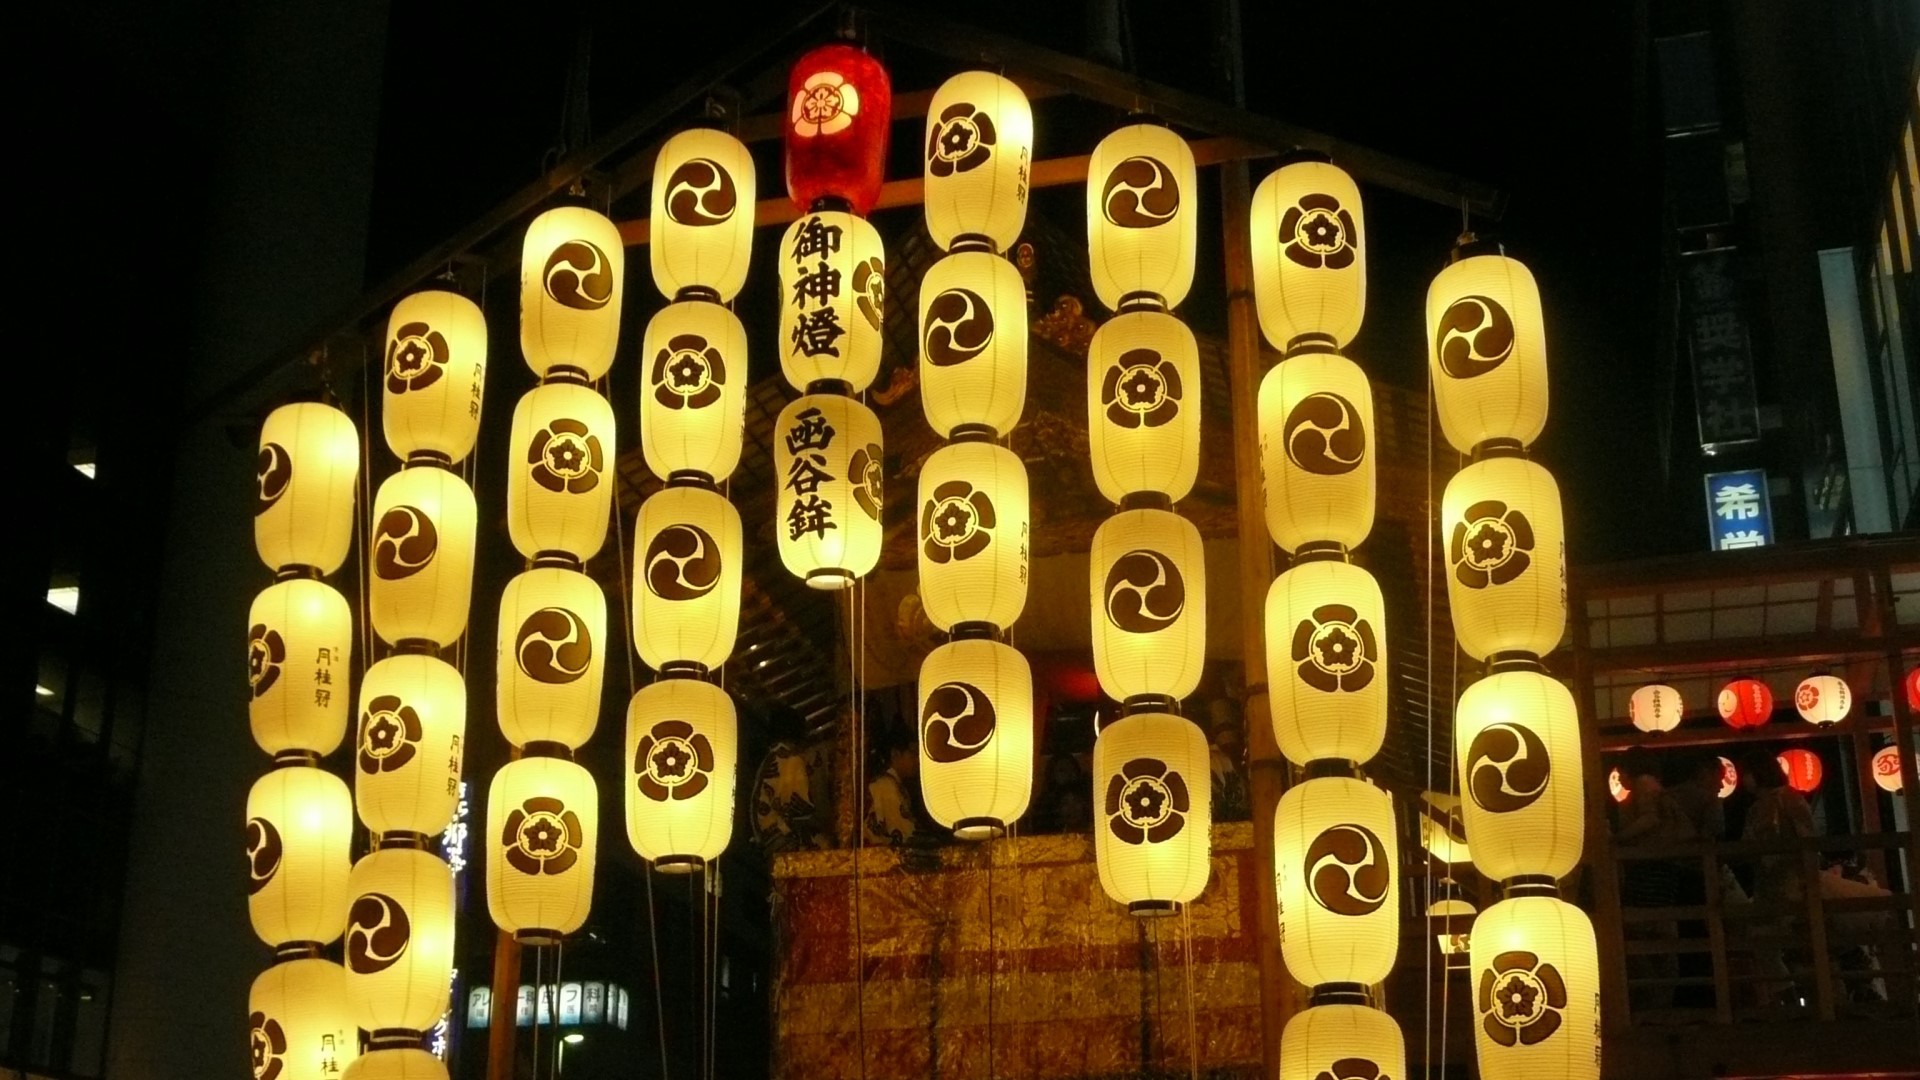 祇園祭コンコンチキチン、コンチキチン。祇園囃子の音色とともに7月の京都は祇園祭一色となります。